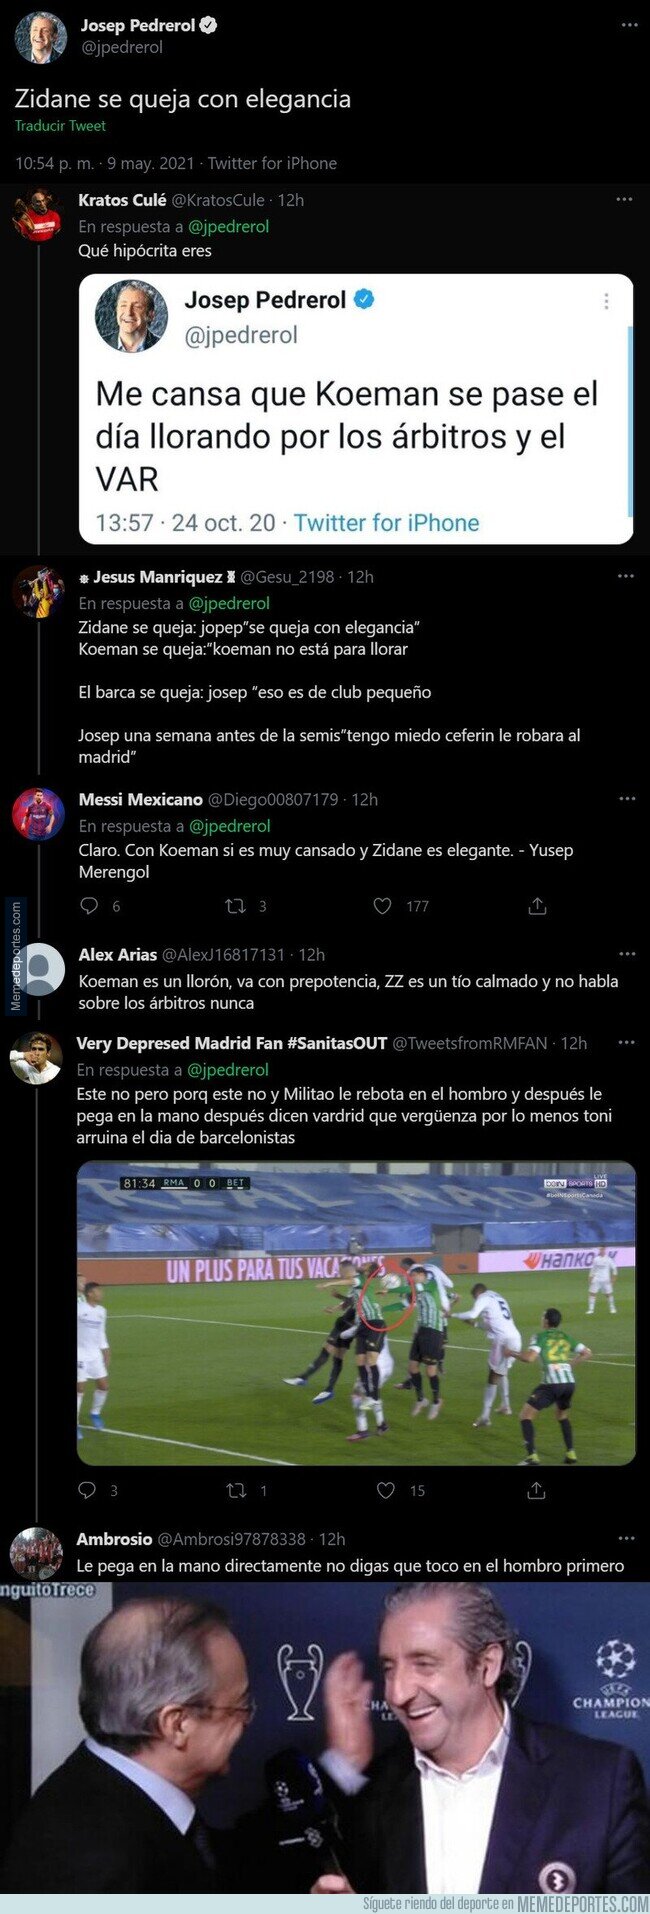 1134772 - La brutal hipocresía de Josep Pedrerol con estos dos tuits cuando opina de Koeman y Zidane sobre los árbitros